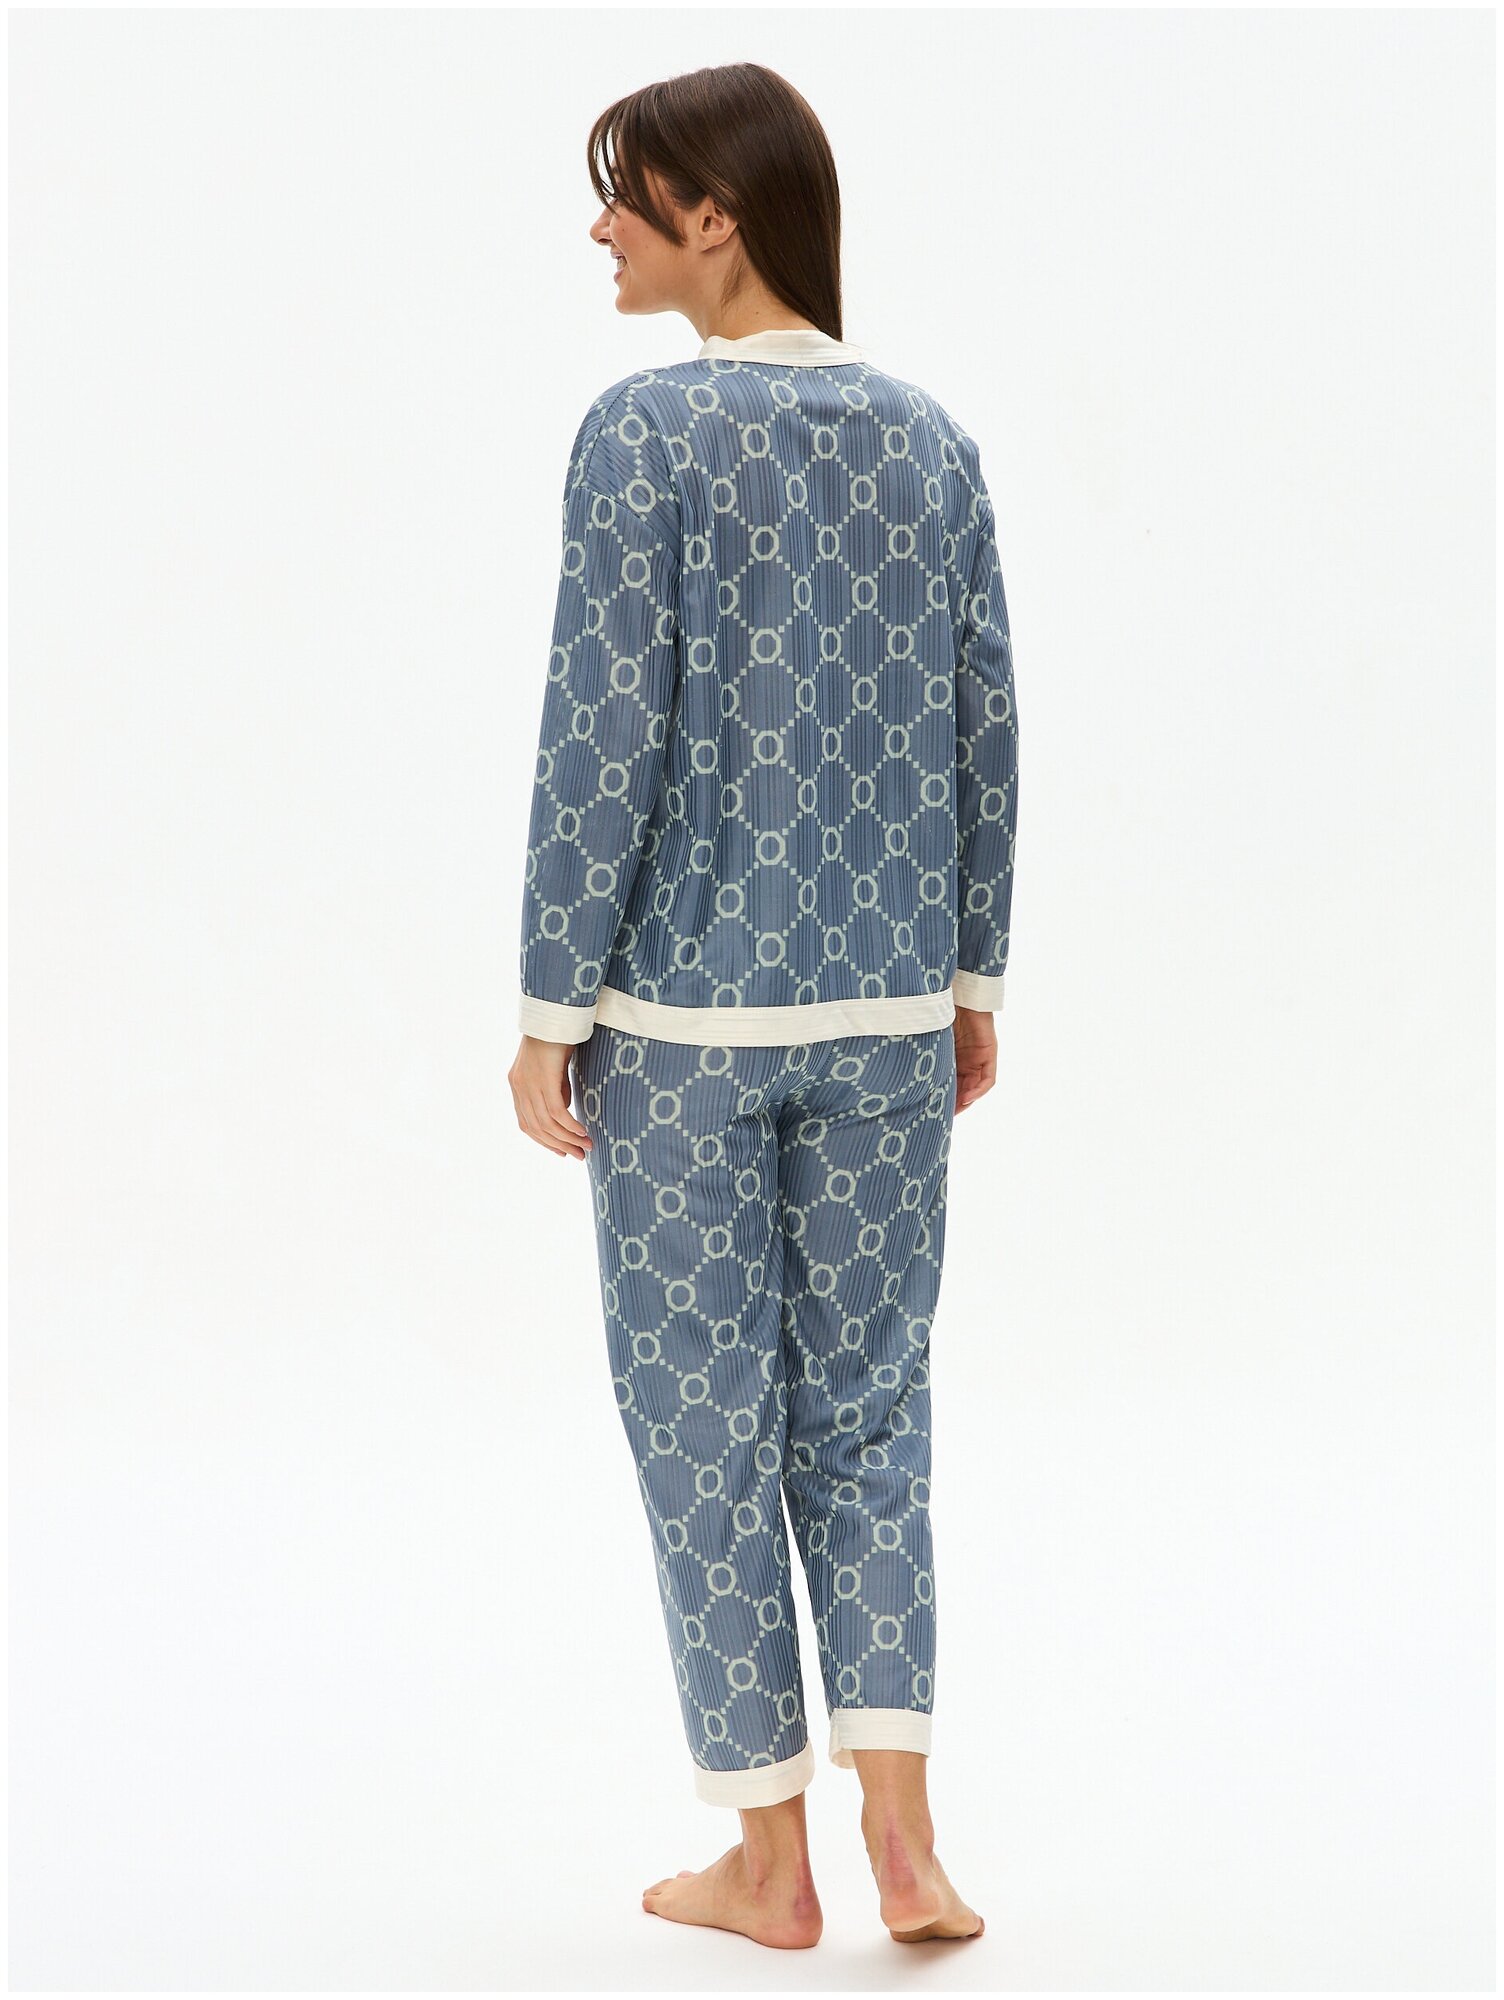 Пижама женская с брюками и рубашкой для сна, домашняя одежда 44/L размер - фотография № 12